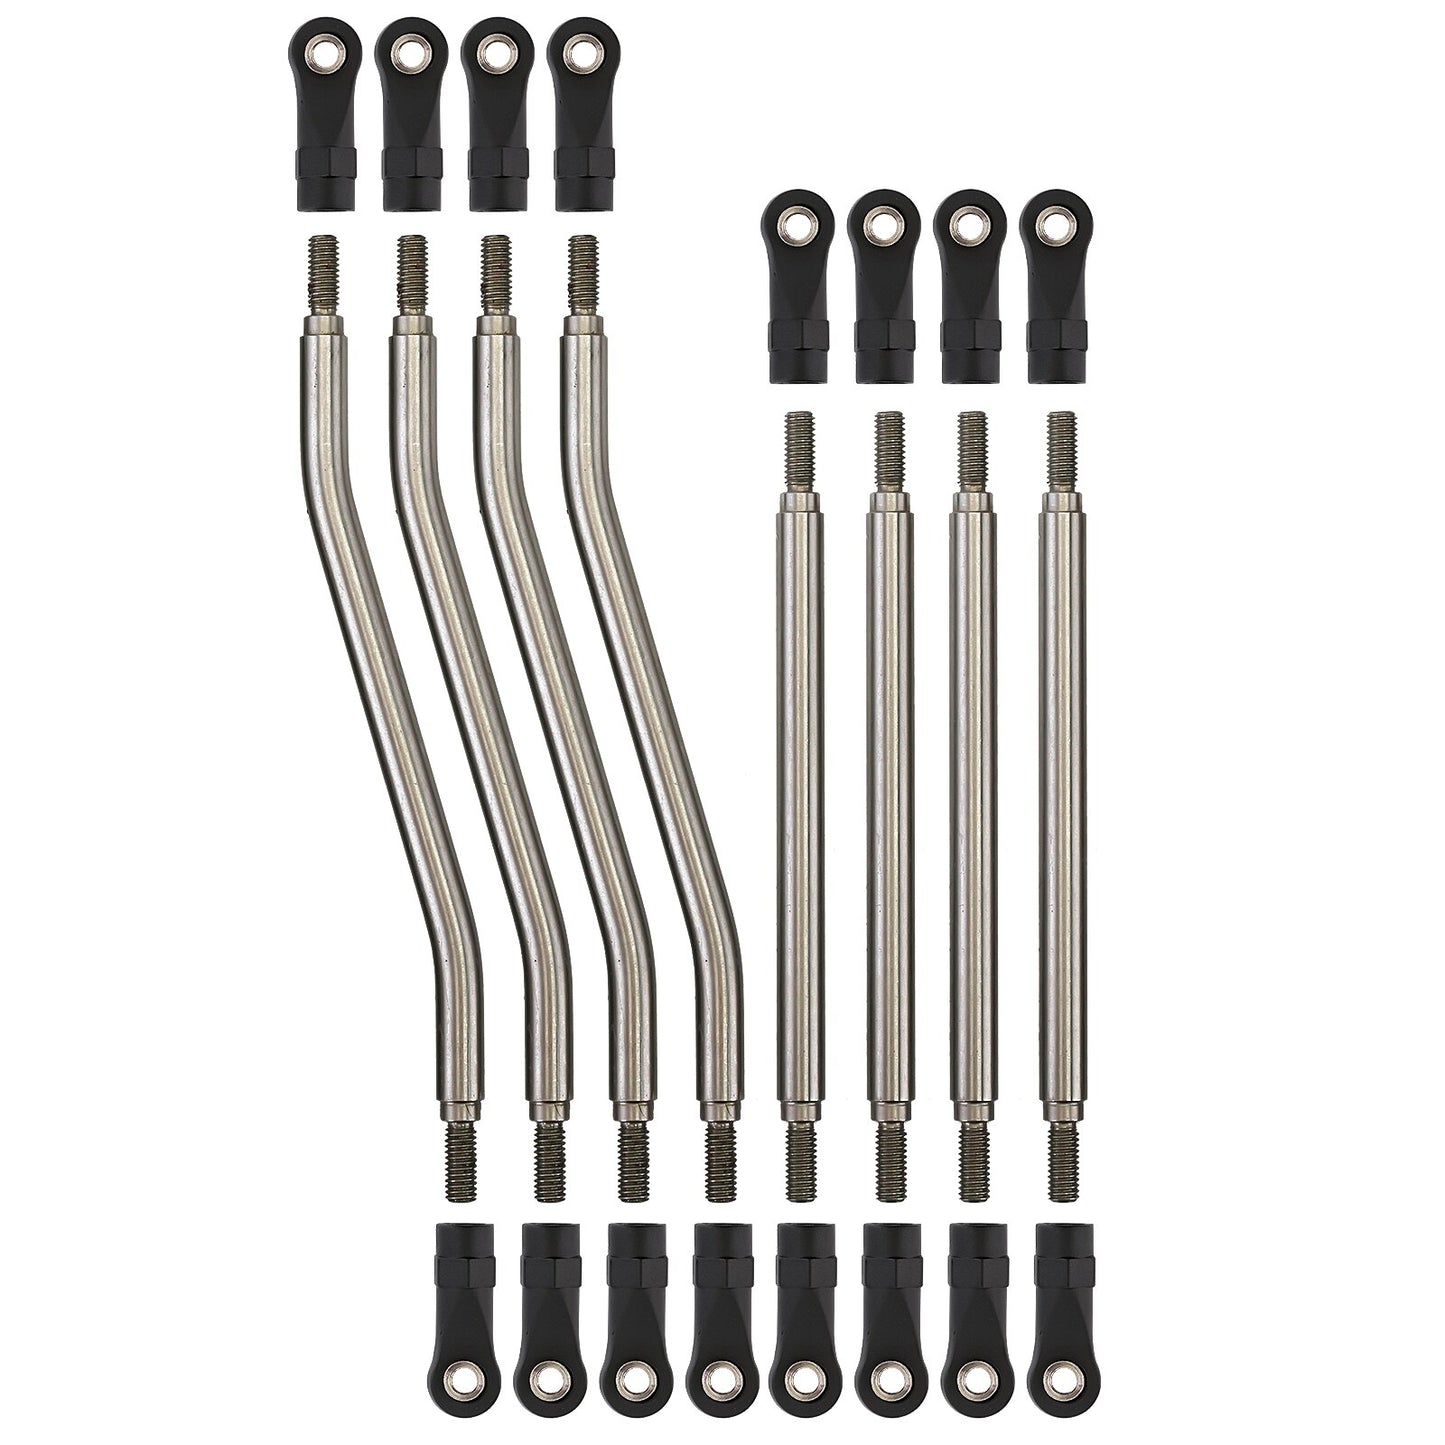 INJORA 8pcs/set Metal Steel Link Plastic Rod End